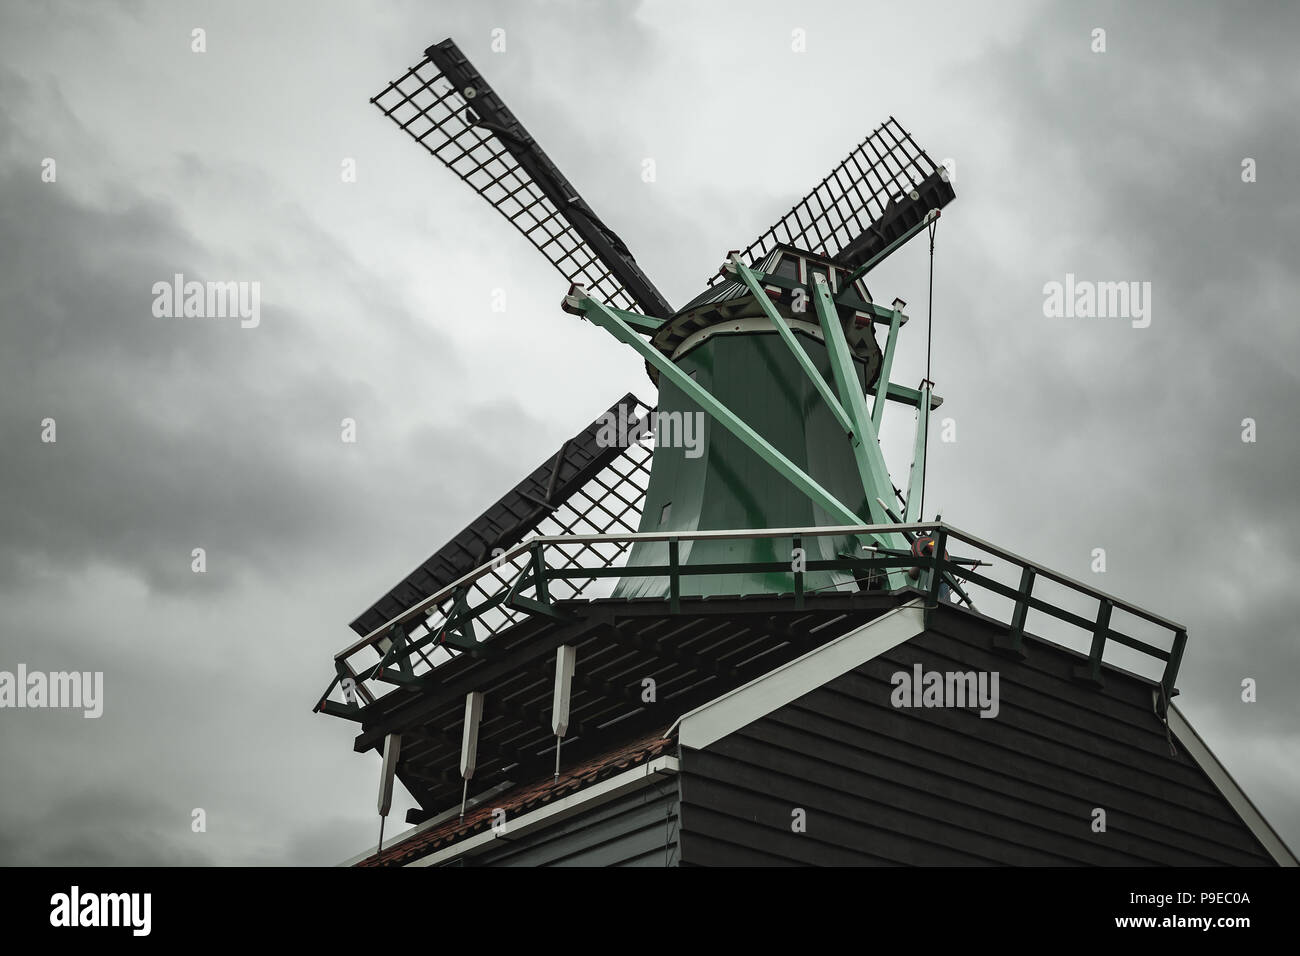 Mühle unter dramatischen bewölkten Himmel. Zaanse Schans Stadt, beliebten touristischen Attraktionen der Niederlande. Vorort von Amsterdam Stockfoto